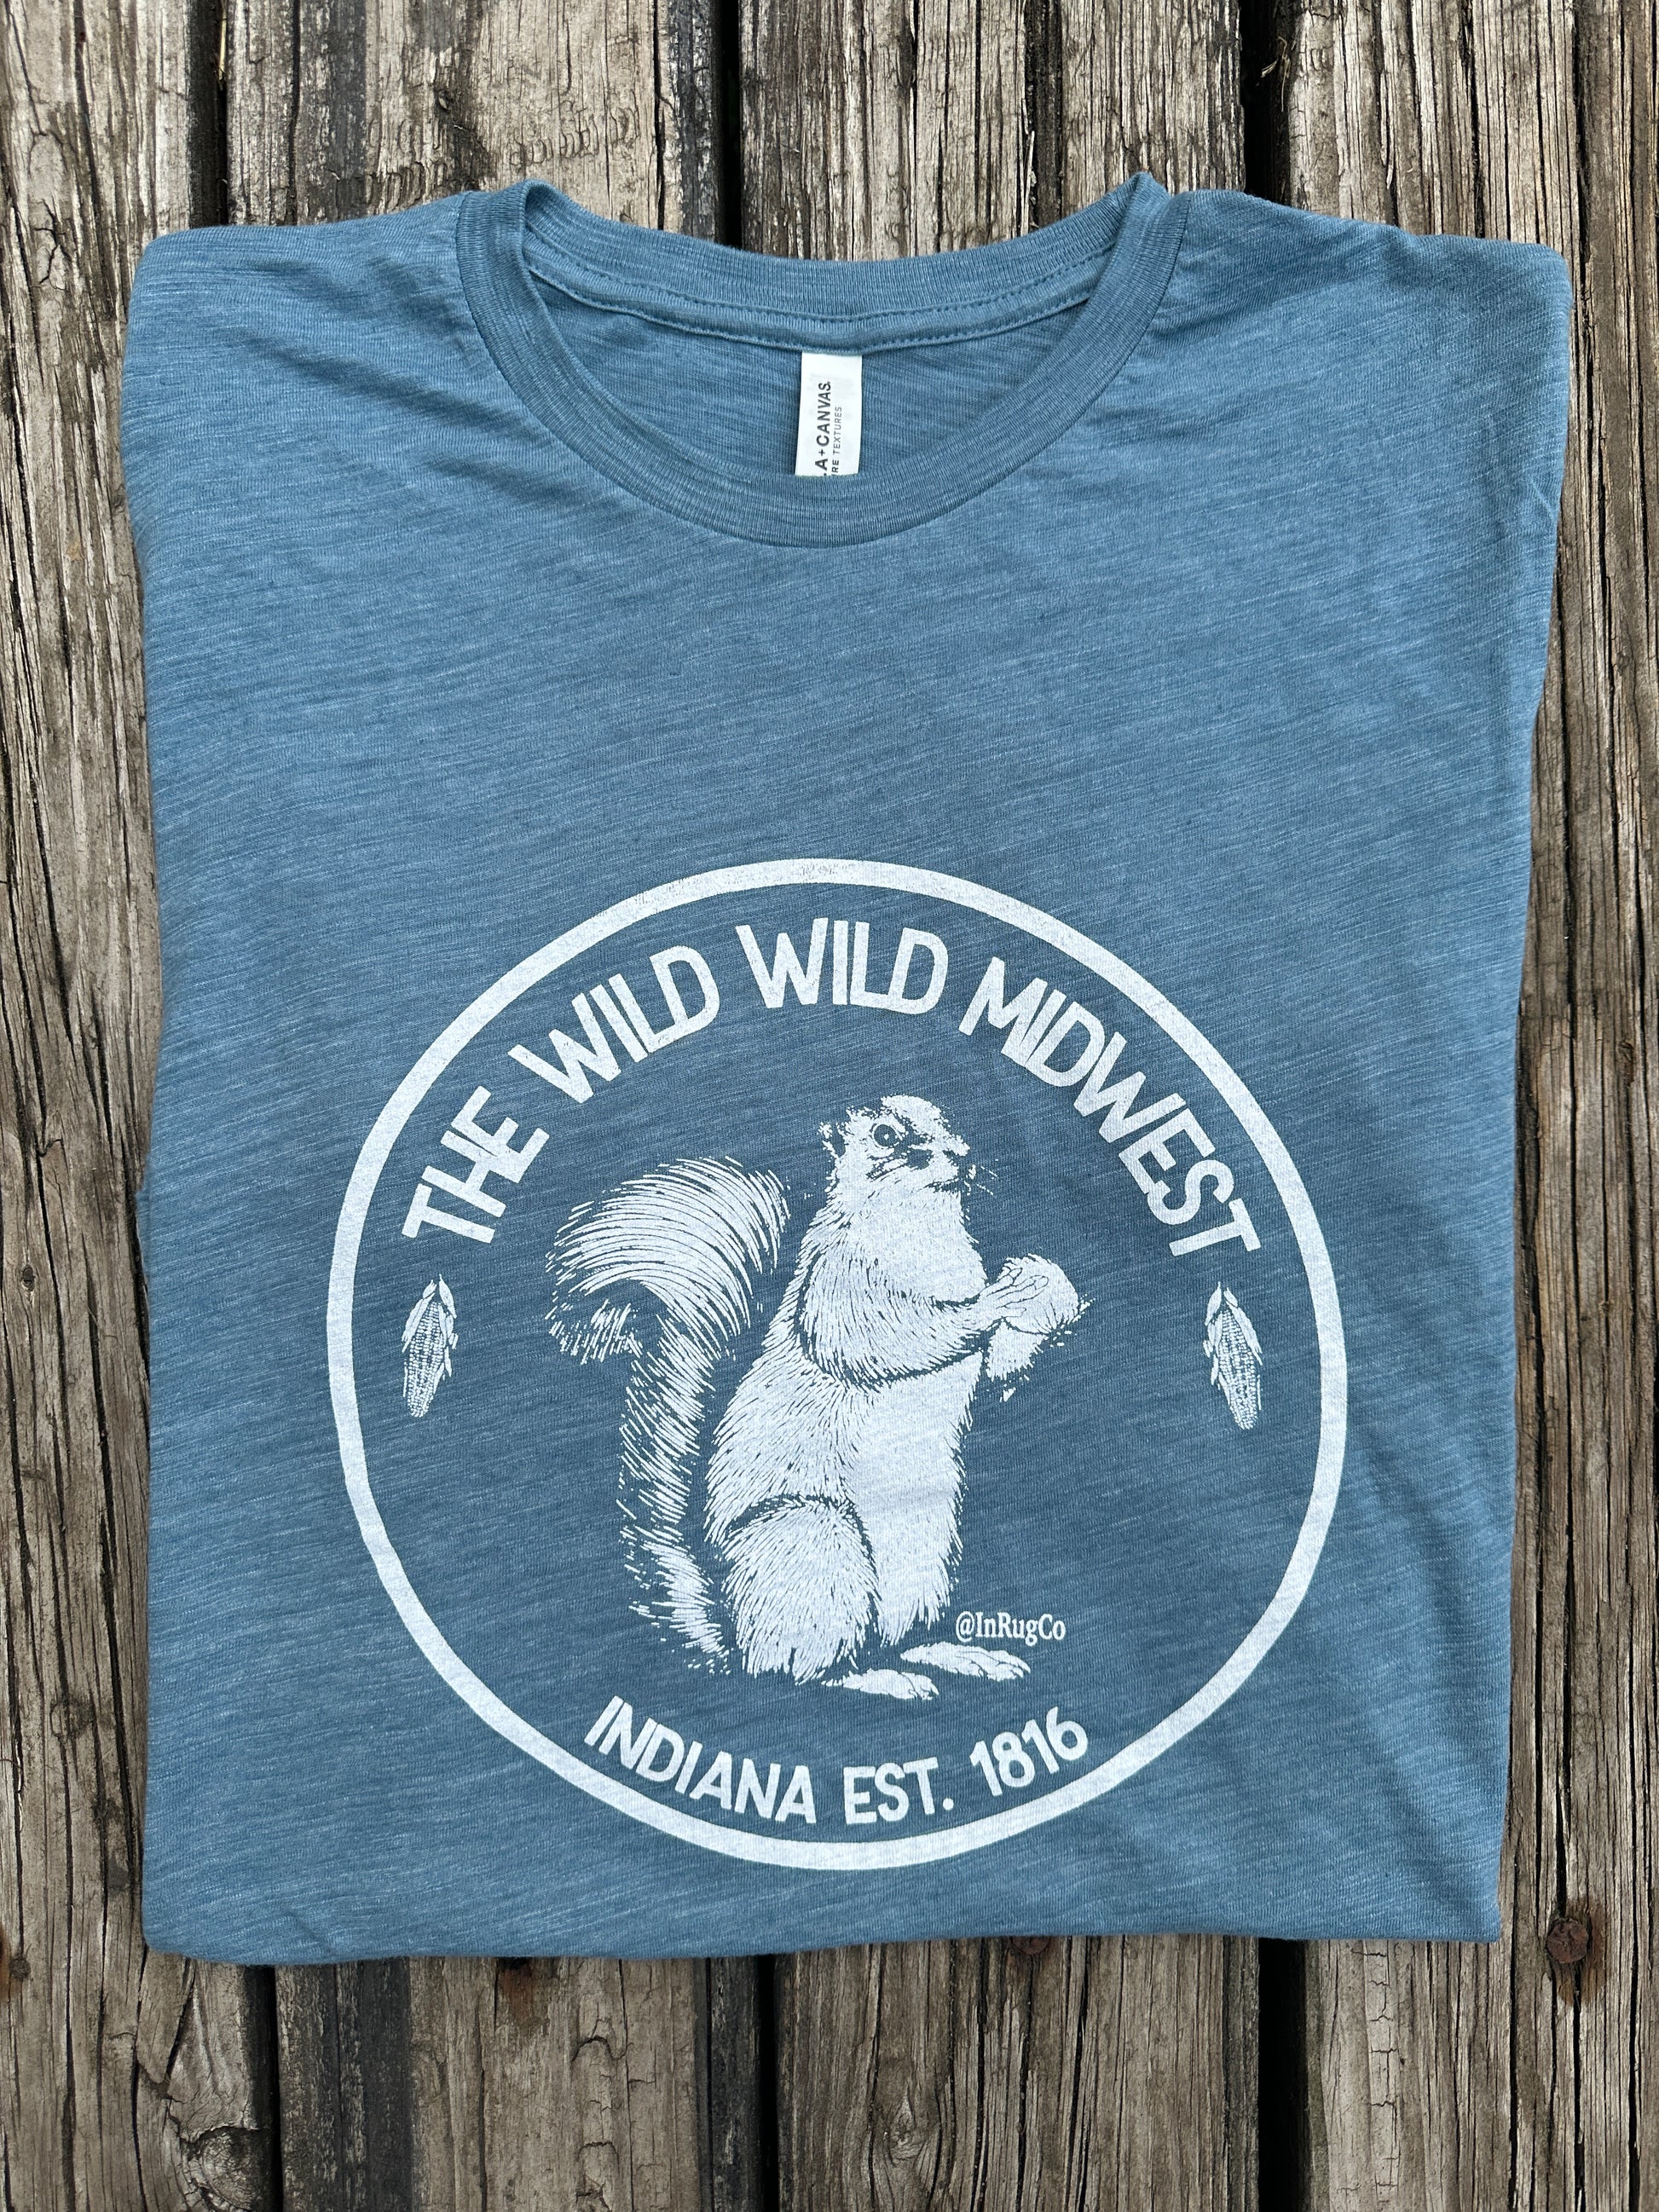 blue wild wild midwest shirt